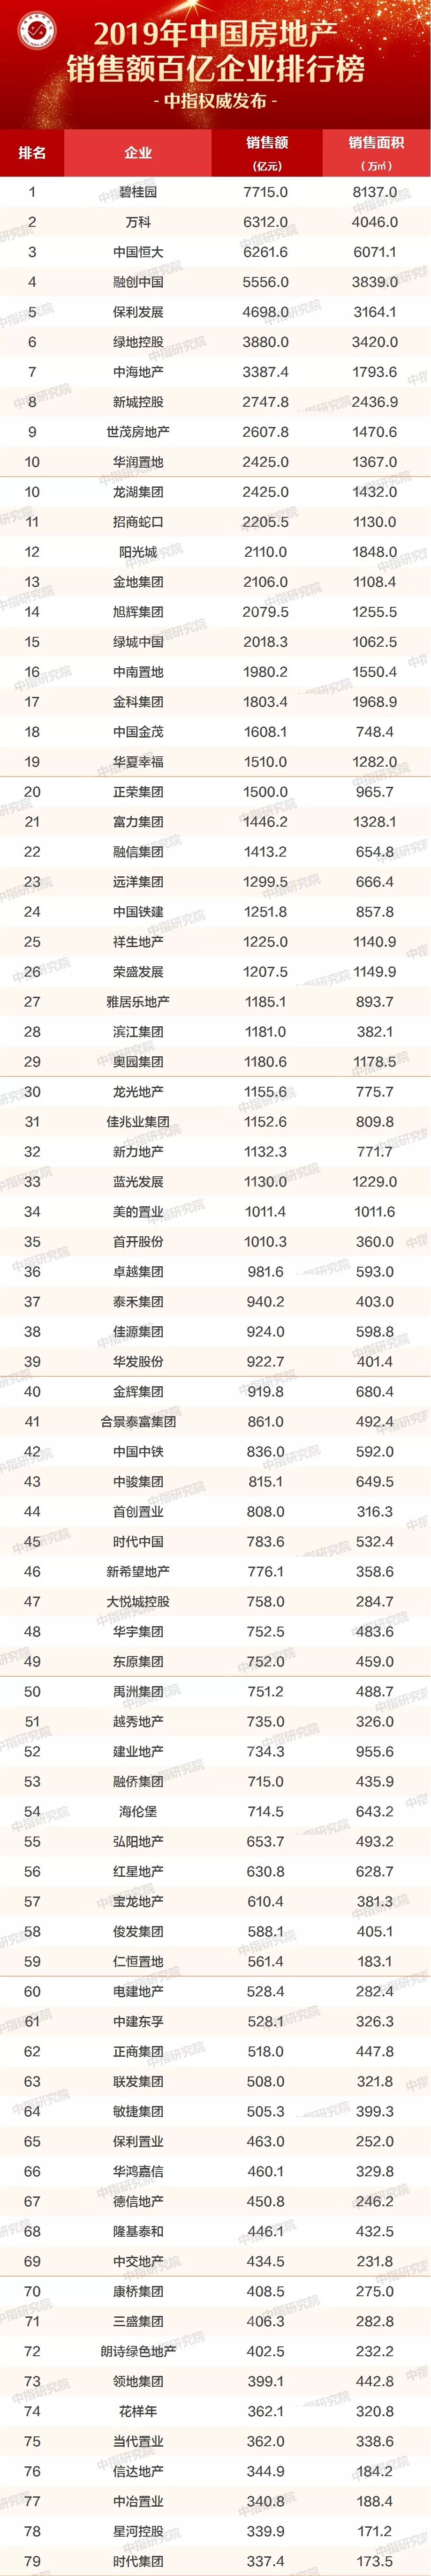 2019年中国房地产销售额百亿企业排行榜/房地产企业拿地排行榜